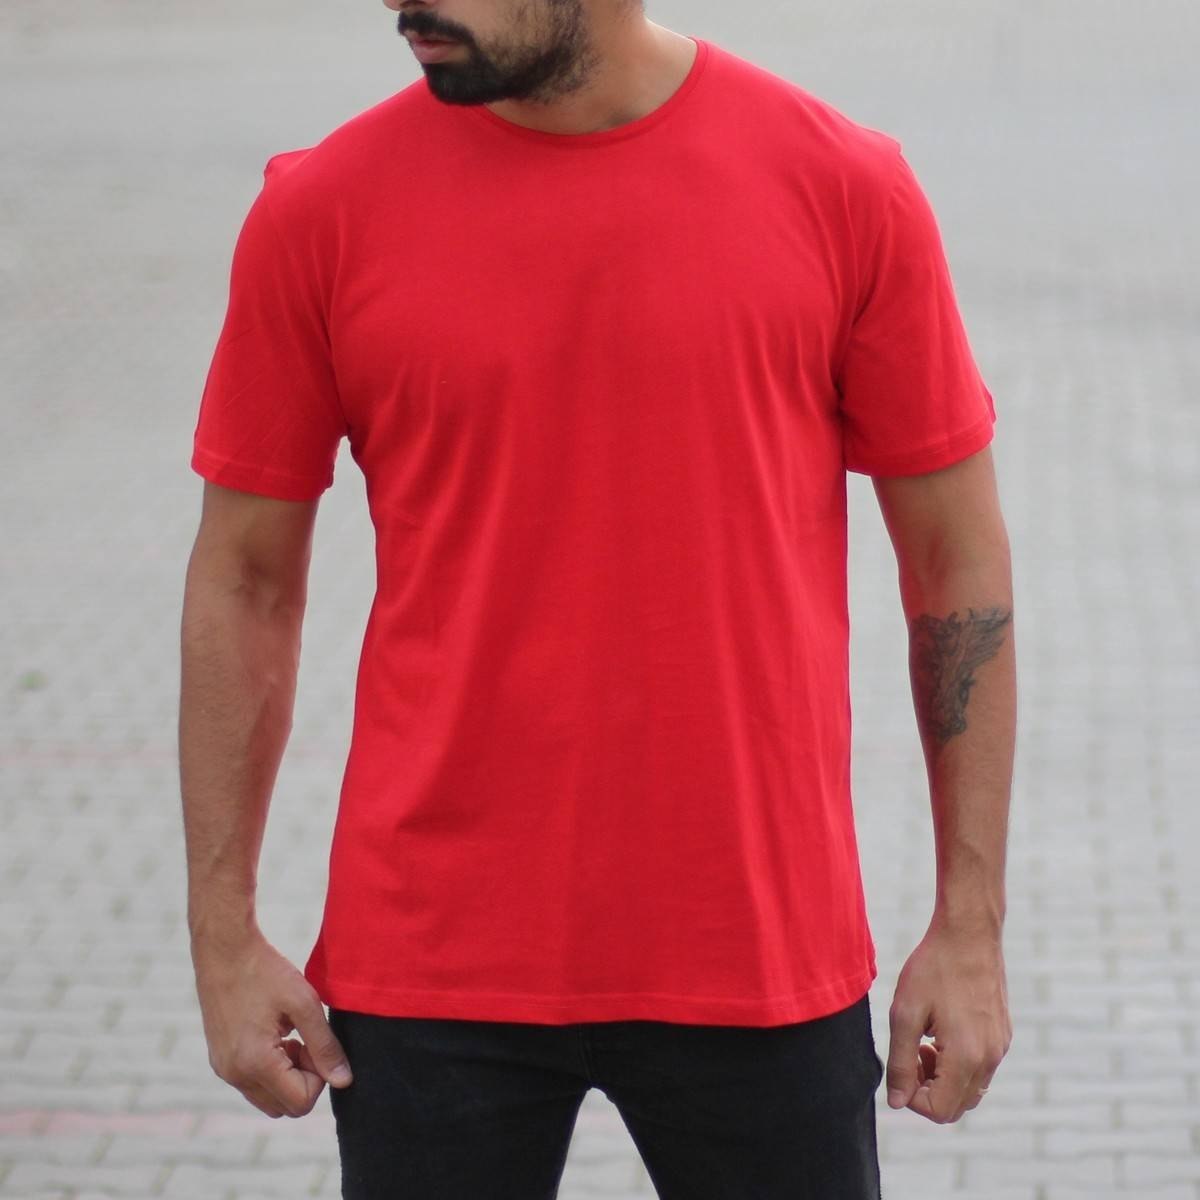 Men's Oversized Basic T-Shirt Red - 2